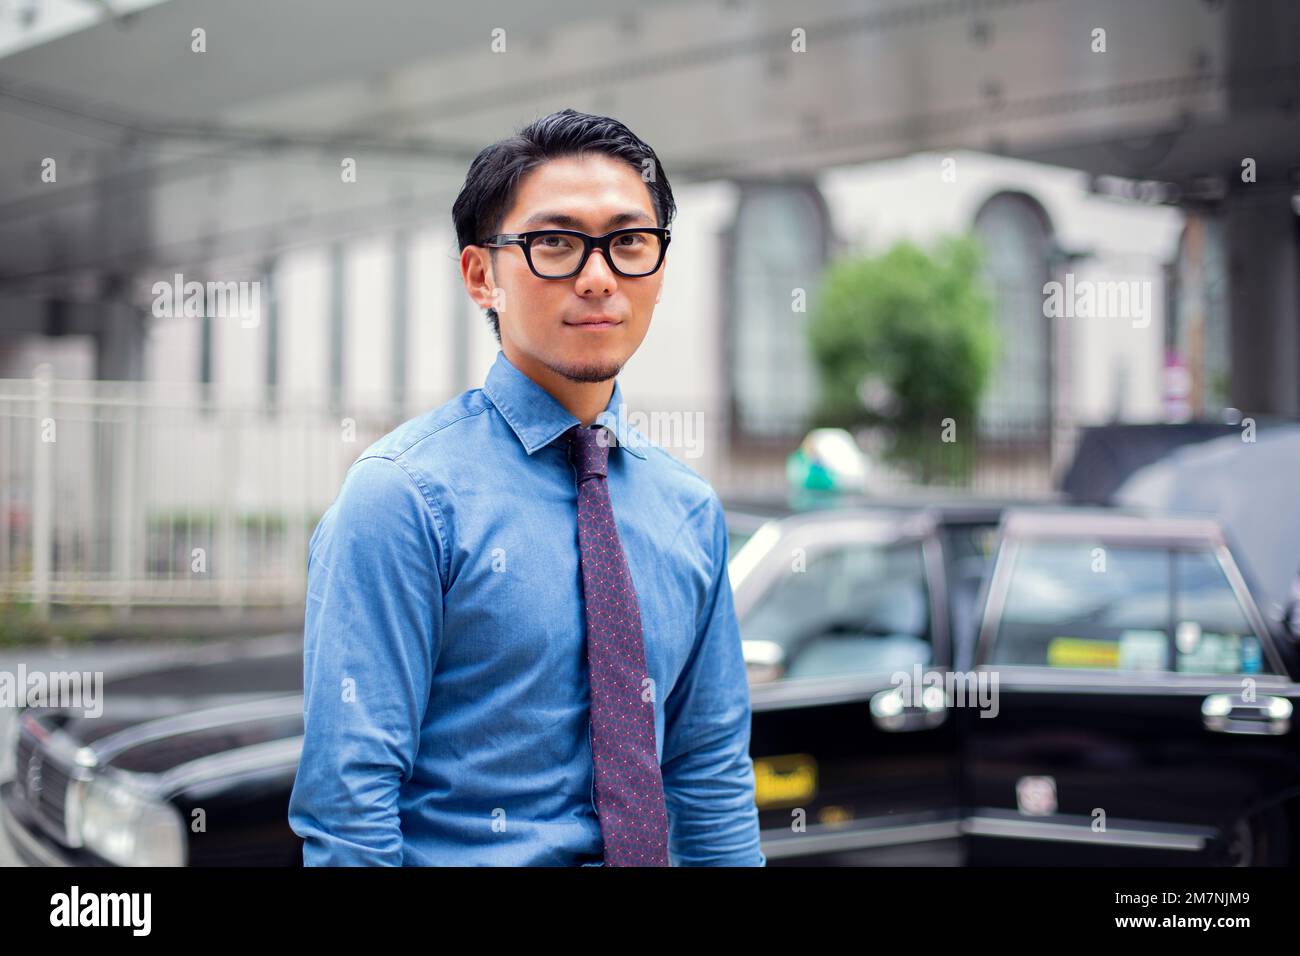 Ein junger Geschäftsmann in der Stadt, unterwegs, ein Mann mit Brille, Hemd und Krawatte, ein Taxi hinter ihm. Stockfoto